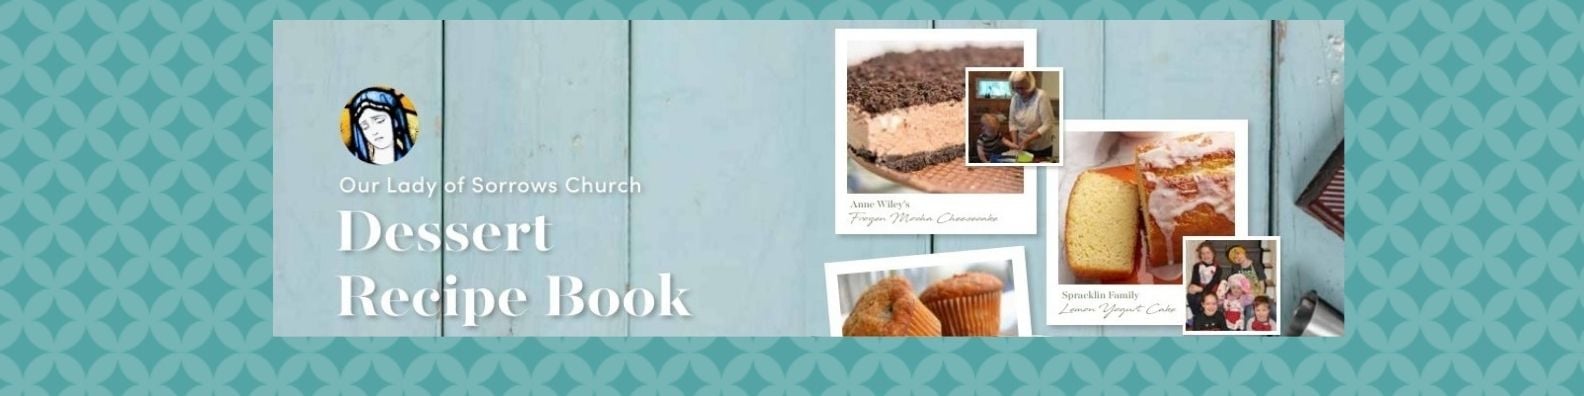 OLS Dessert Recipe Book